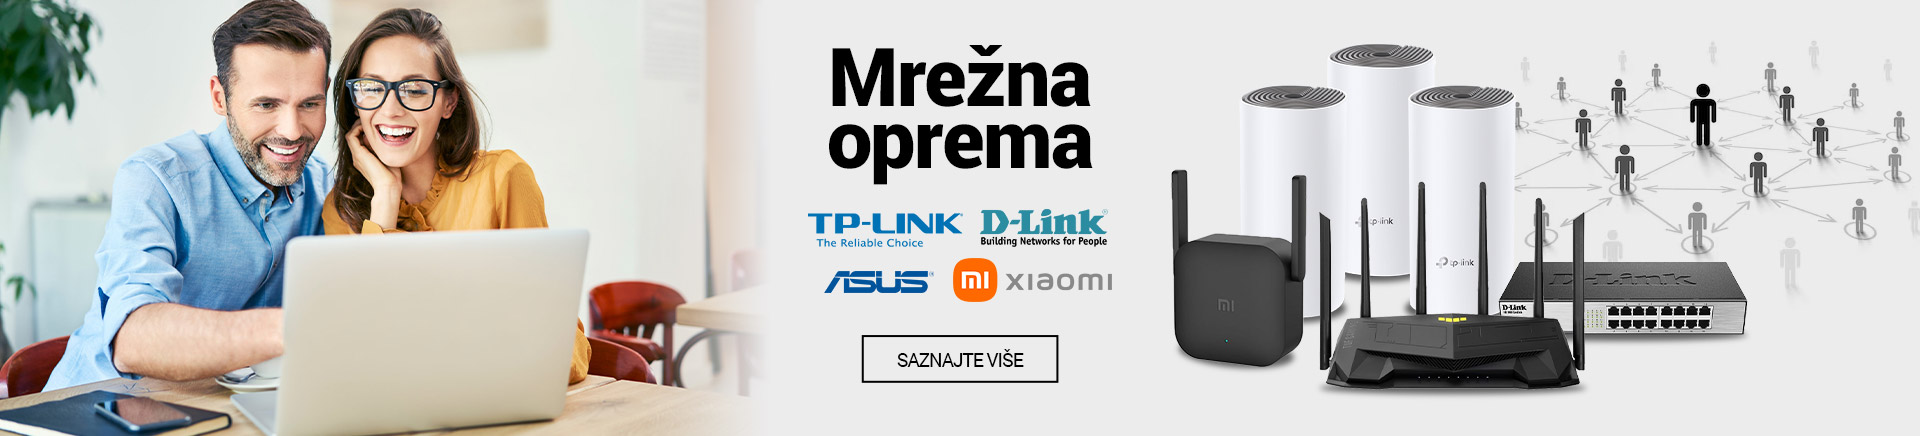 HR-Mrezna-oprema-TP-Link-D-Link-Asus-Xiaomi-MOBILE-380-X-436.jpg